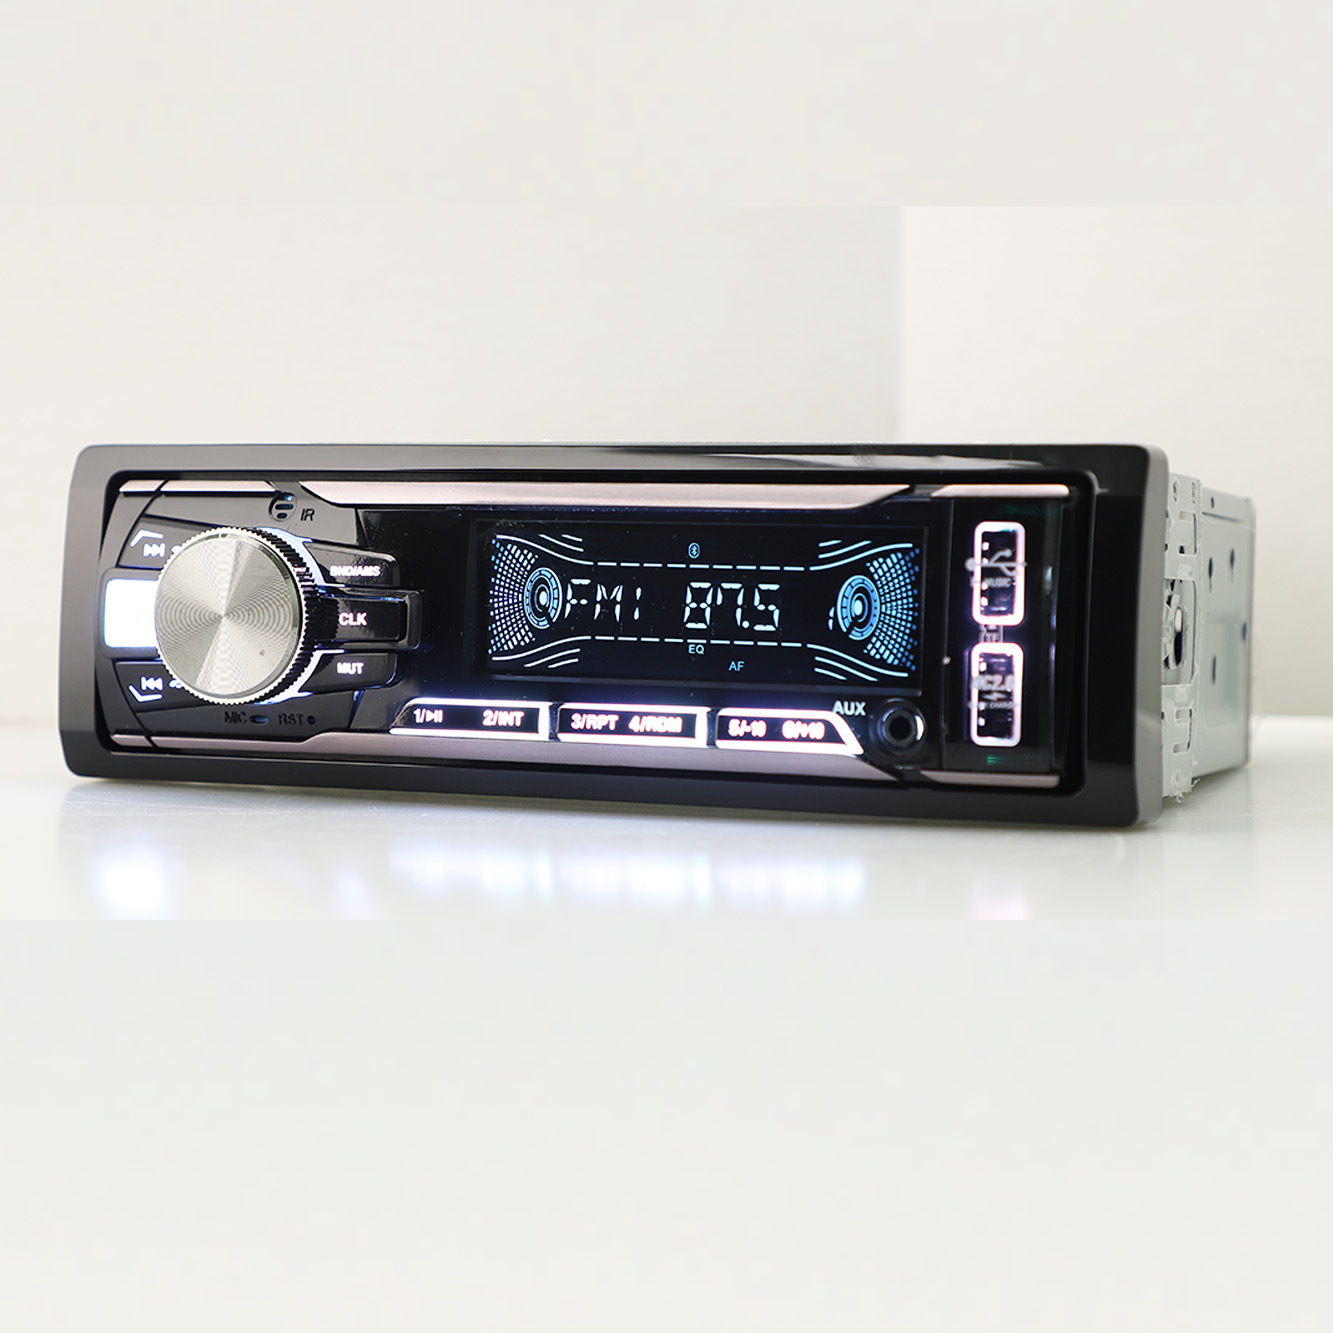 Reprodutor de painel fixo para carro, vídeo estéreo, áudio para carro, multicolorido, um DIN FM, reprodutor de MP3 para carro com USB duplo